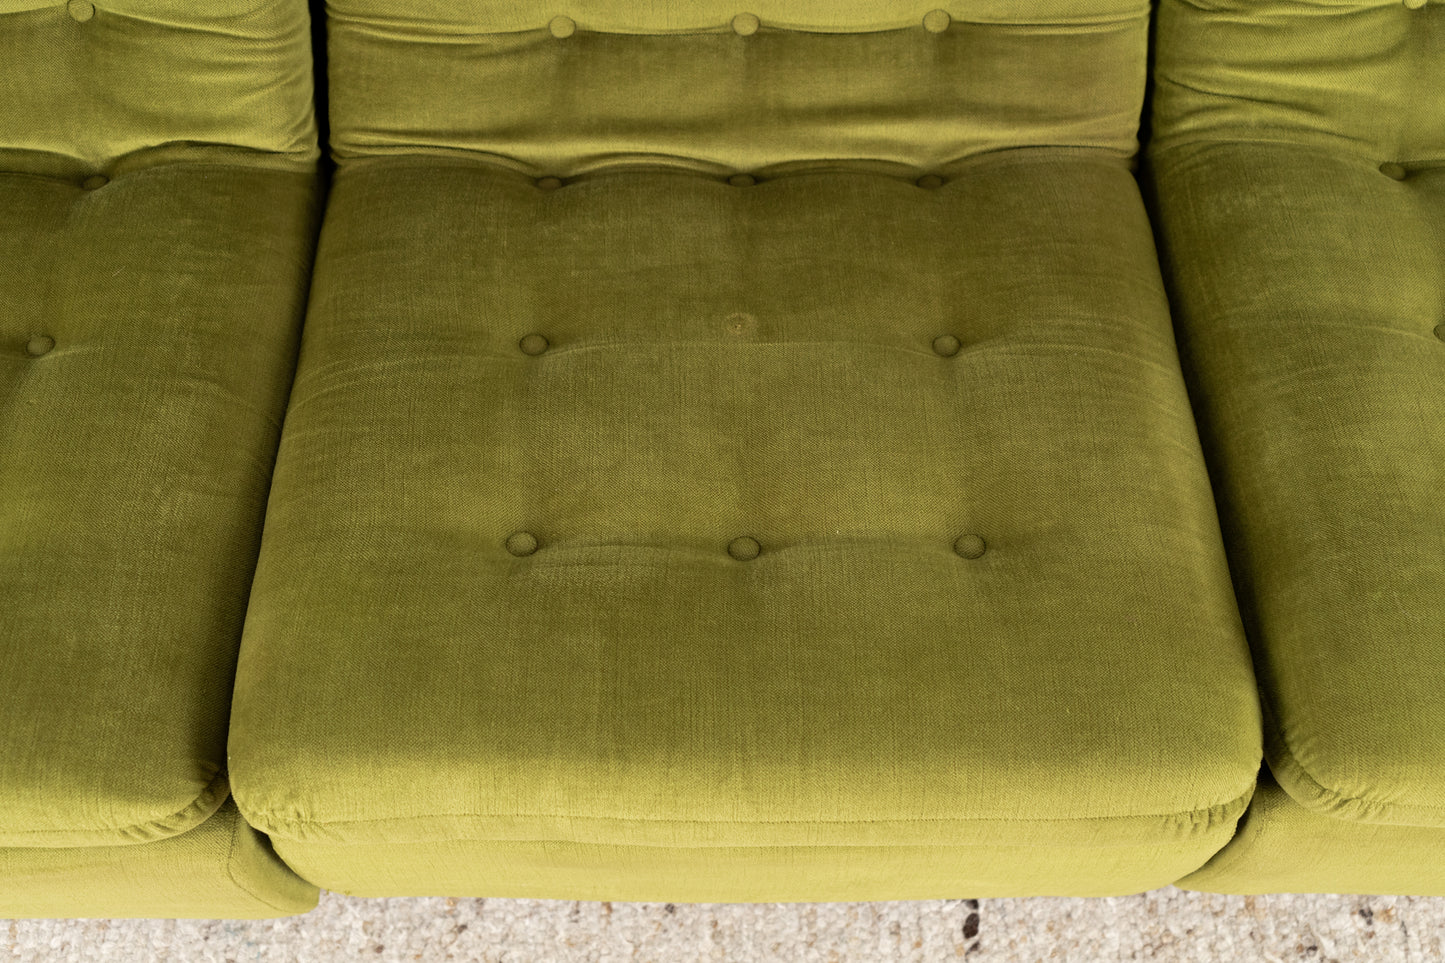 1 von 2 Vintage Sofas 1960er Grün Samt Dreisitzer Retro Mid Century Sessel Couch 60s Modular